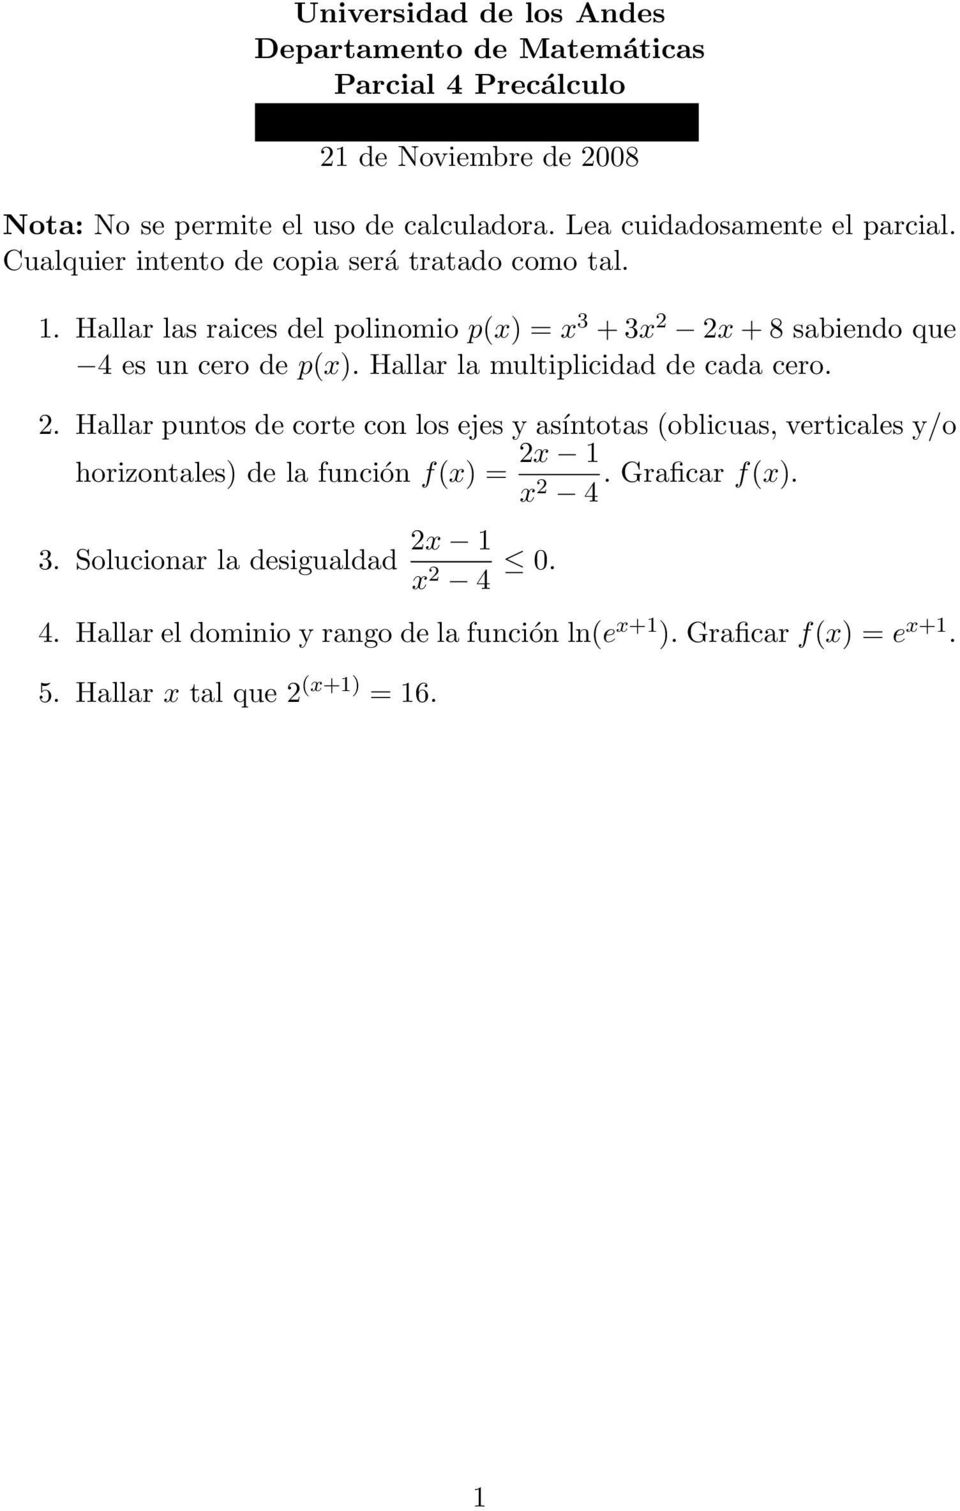 Hallar las raices del polinomio p(x) = x 3 + 3x 2 